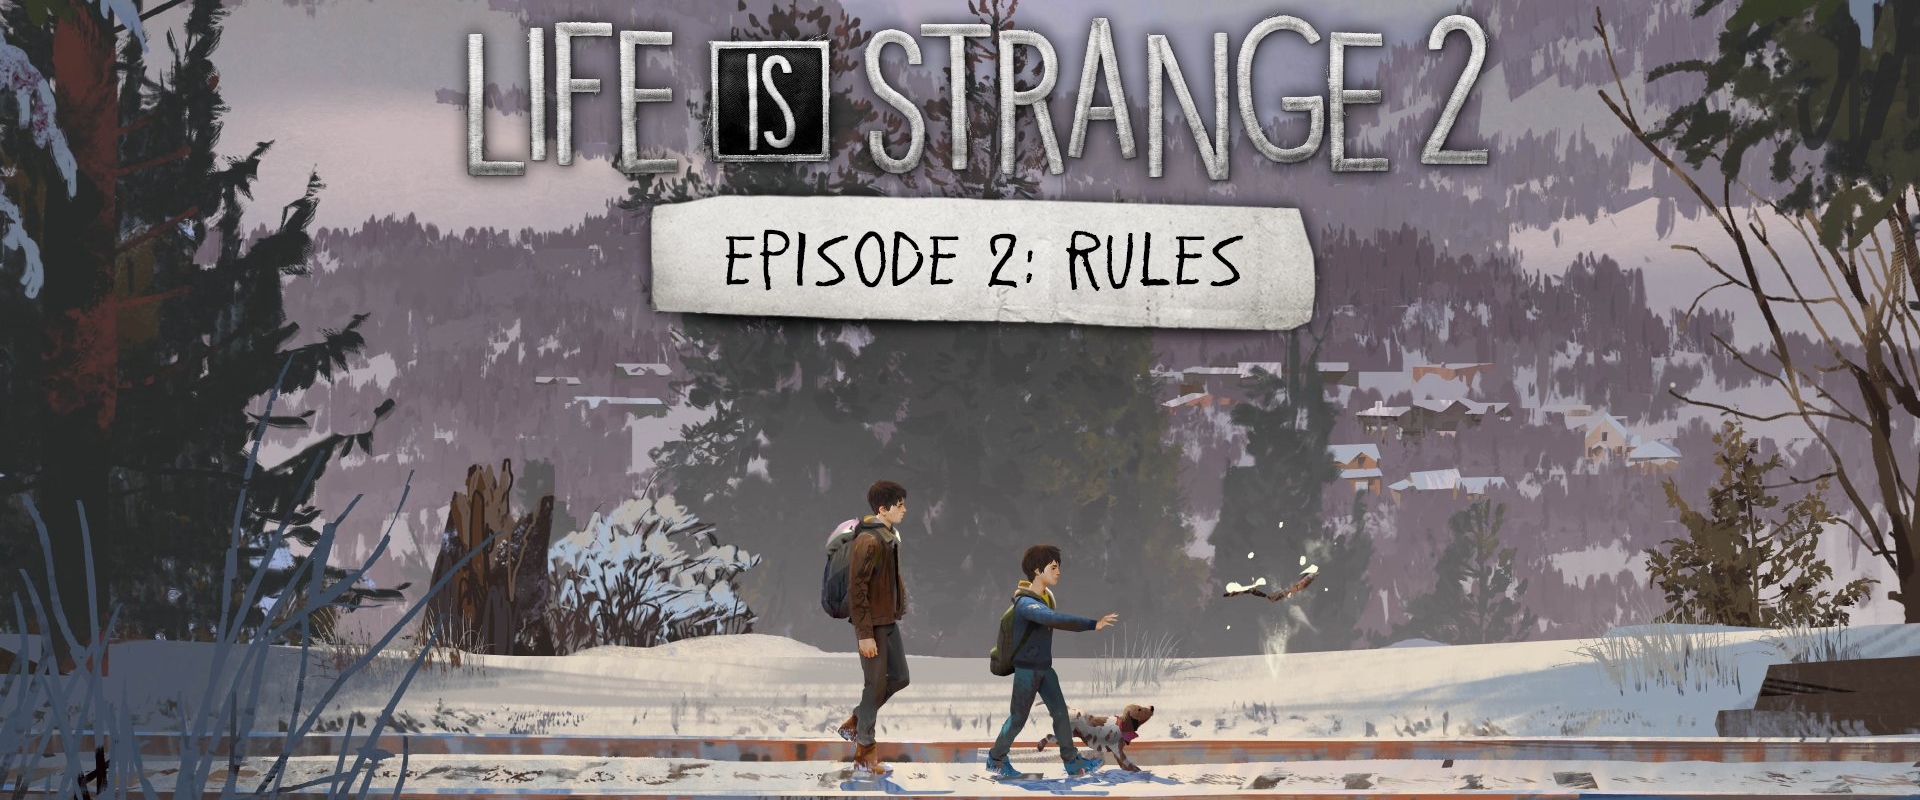 Rokonok és szabályok: megérkezett a Life is Strange 2 második epizódja